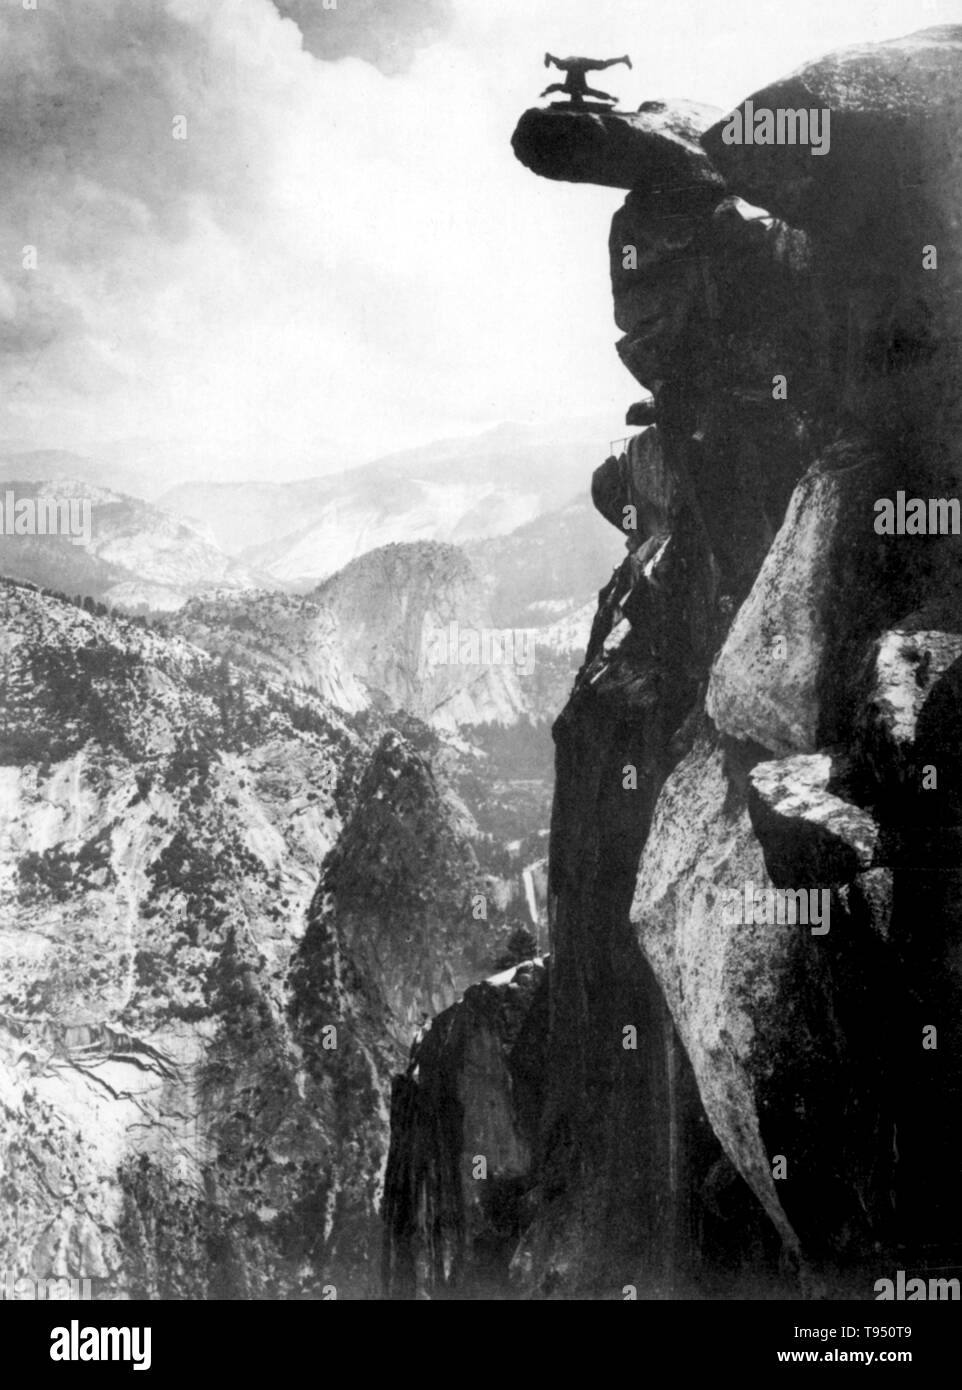 Junger Mann auf dem Kopf auf dem Glacier Point ausgeglichen. Glacier Point ist ein Aussichtspunkt über Yosemite Valley in Kalifornien, USA. Es ist an der Südwand von Yosemite Tal auf einer Höhe von 7,214 Metern. Der Punkt bietet einen herrlichen Blick auf, die verschiedenen der Yosemite National Park bekannten Sehenswürdigkeiten, wie Yosemite Valley, Yosemite Falls, Half Dome, Vernal Fall, Nevada Fall, und Wolken. 1890s Stockfoto